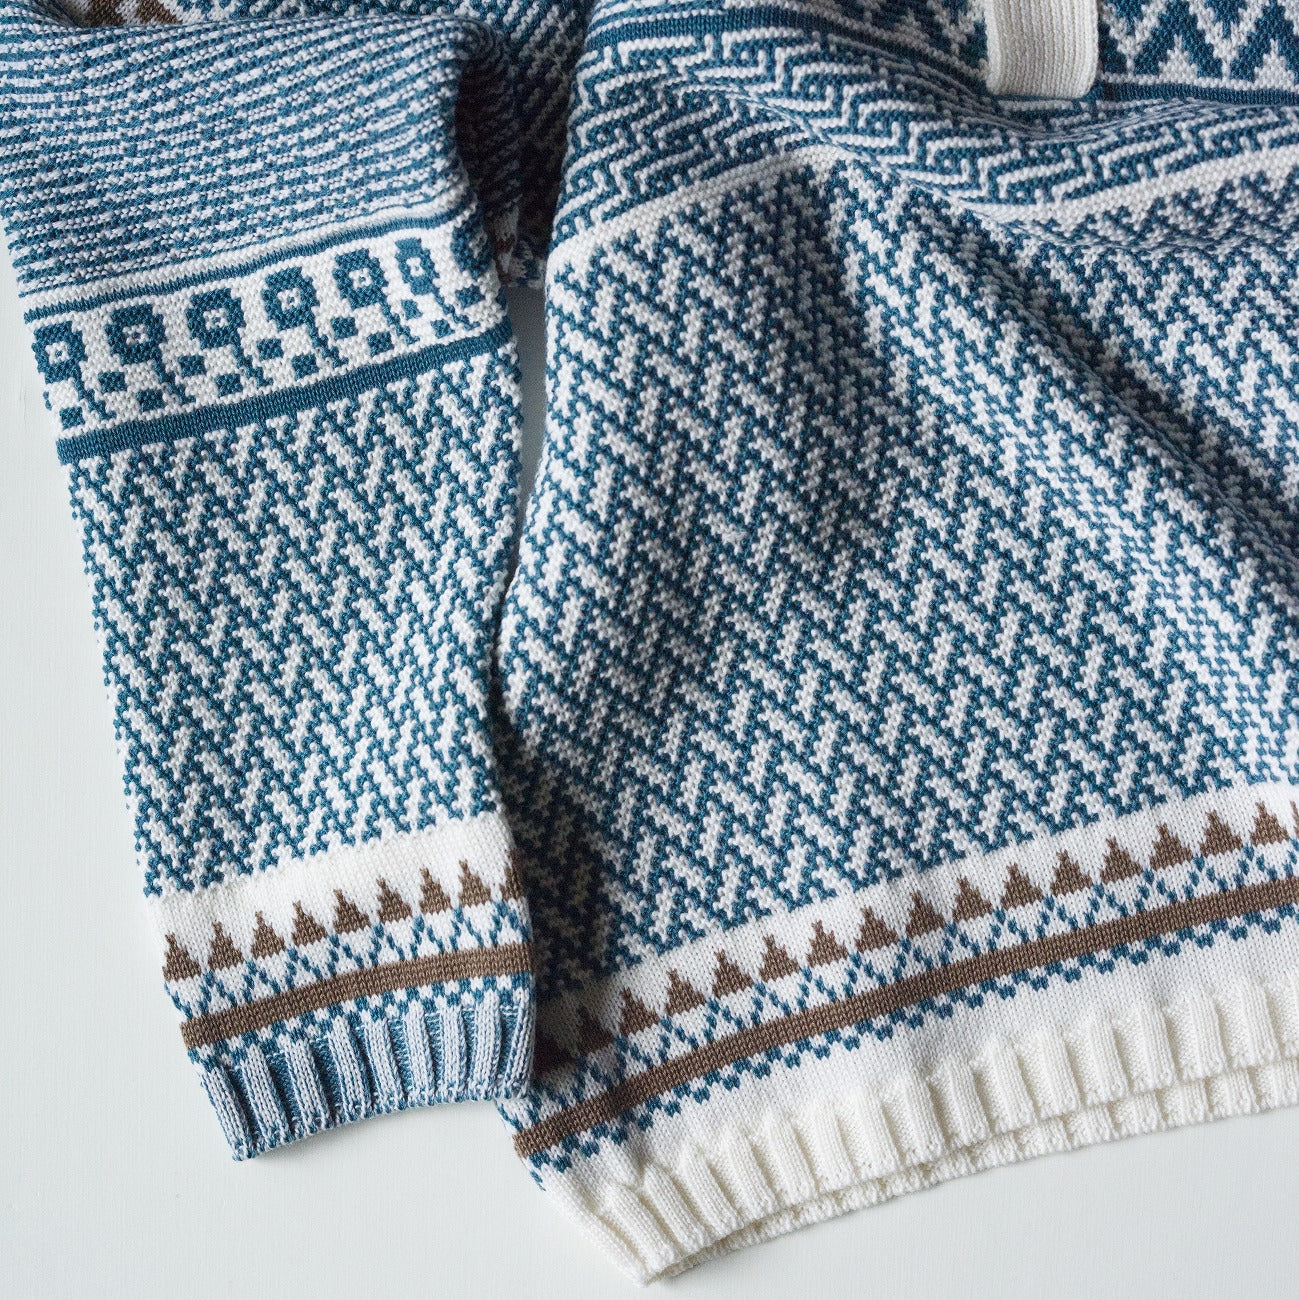 Kigansai pull-on knit